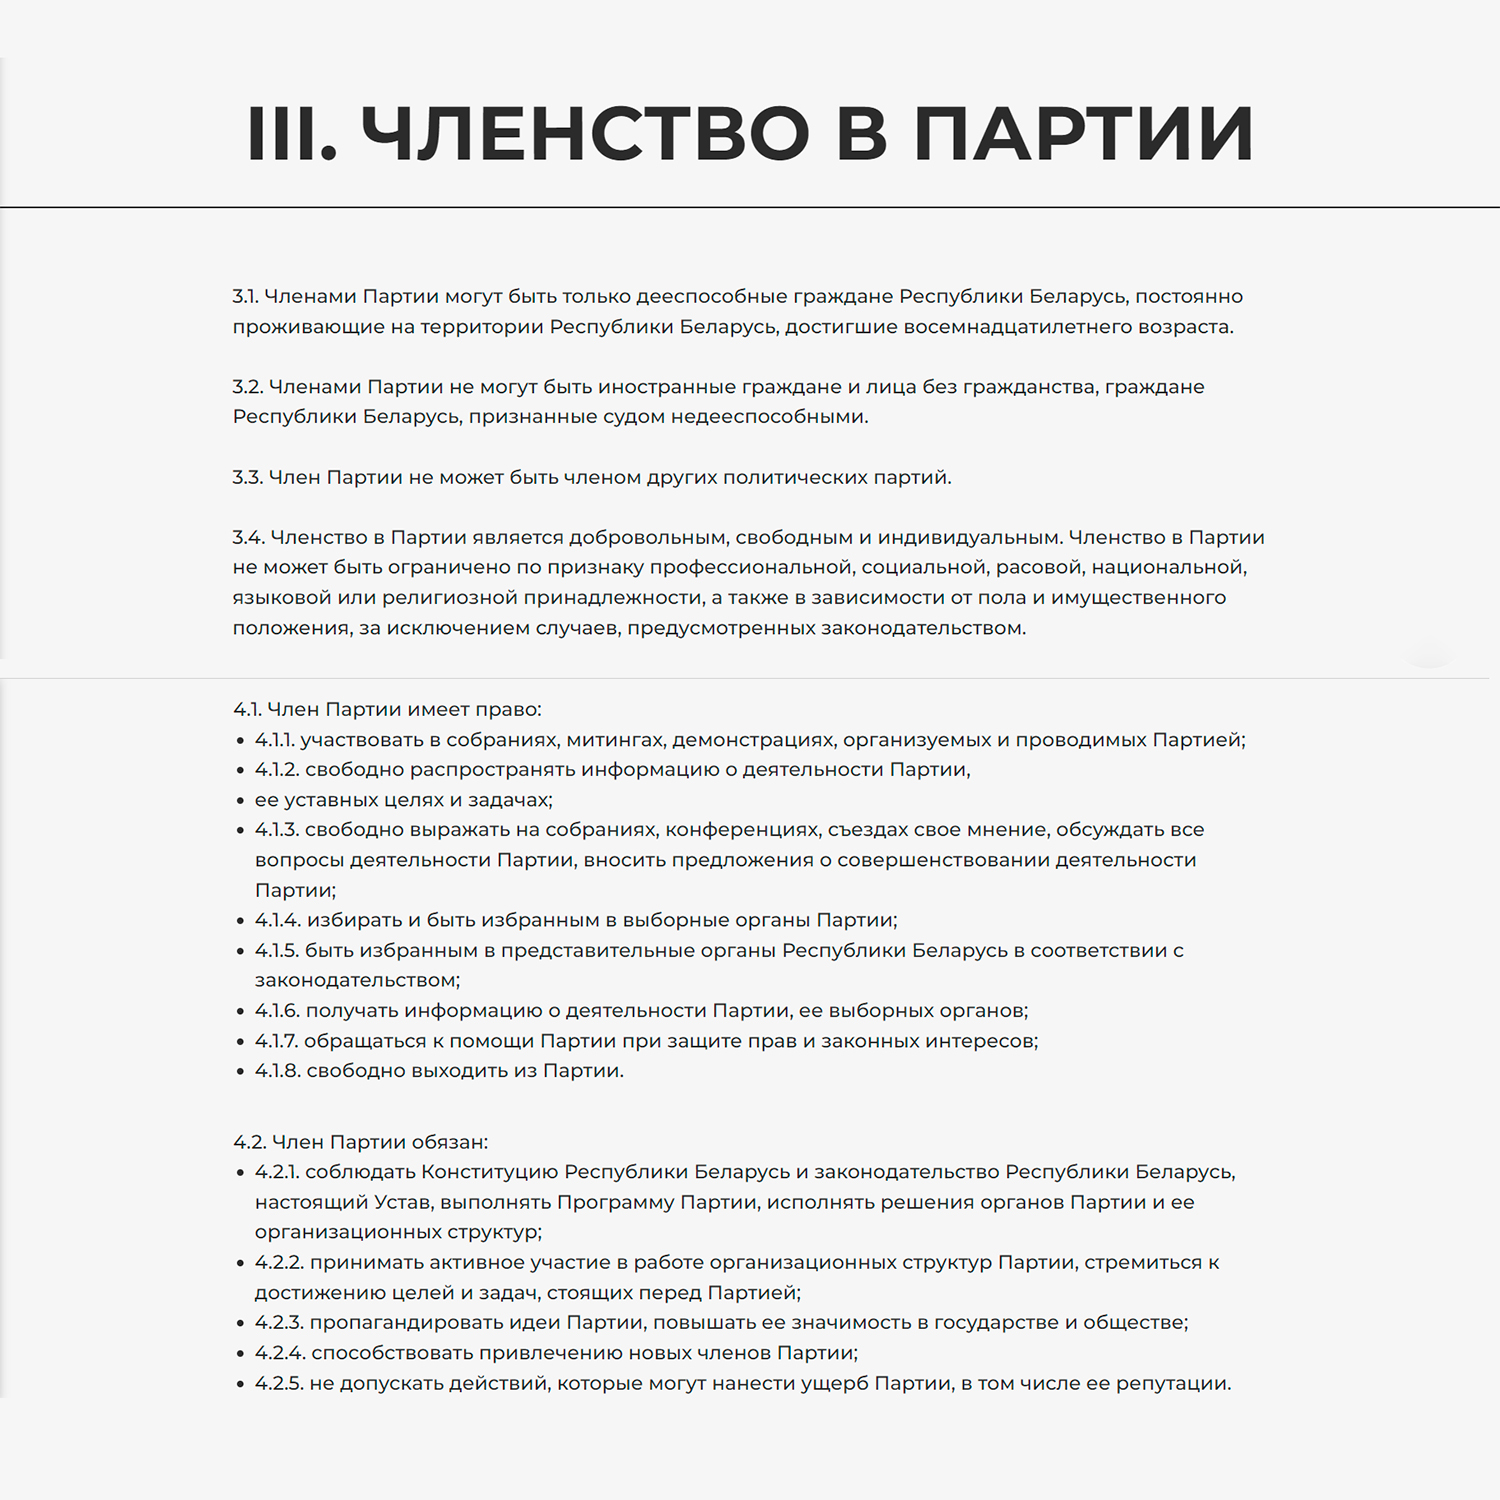 Выдержки из Устава и Программы с сайта Белорусской партии «Белая Русь» (Страница 4)